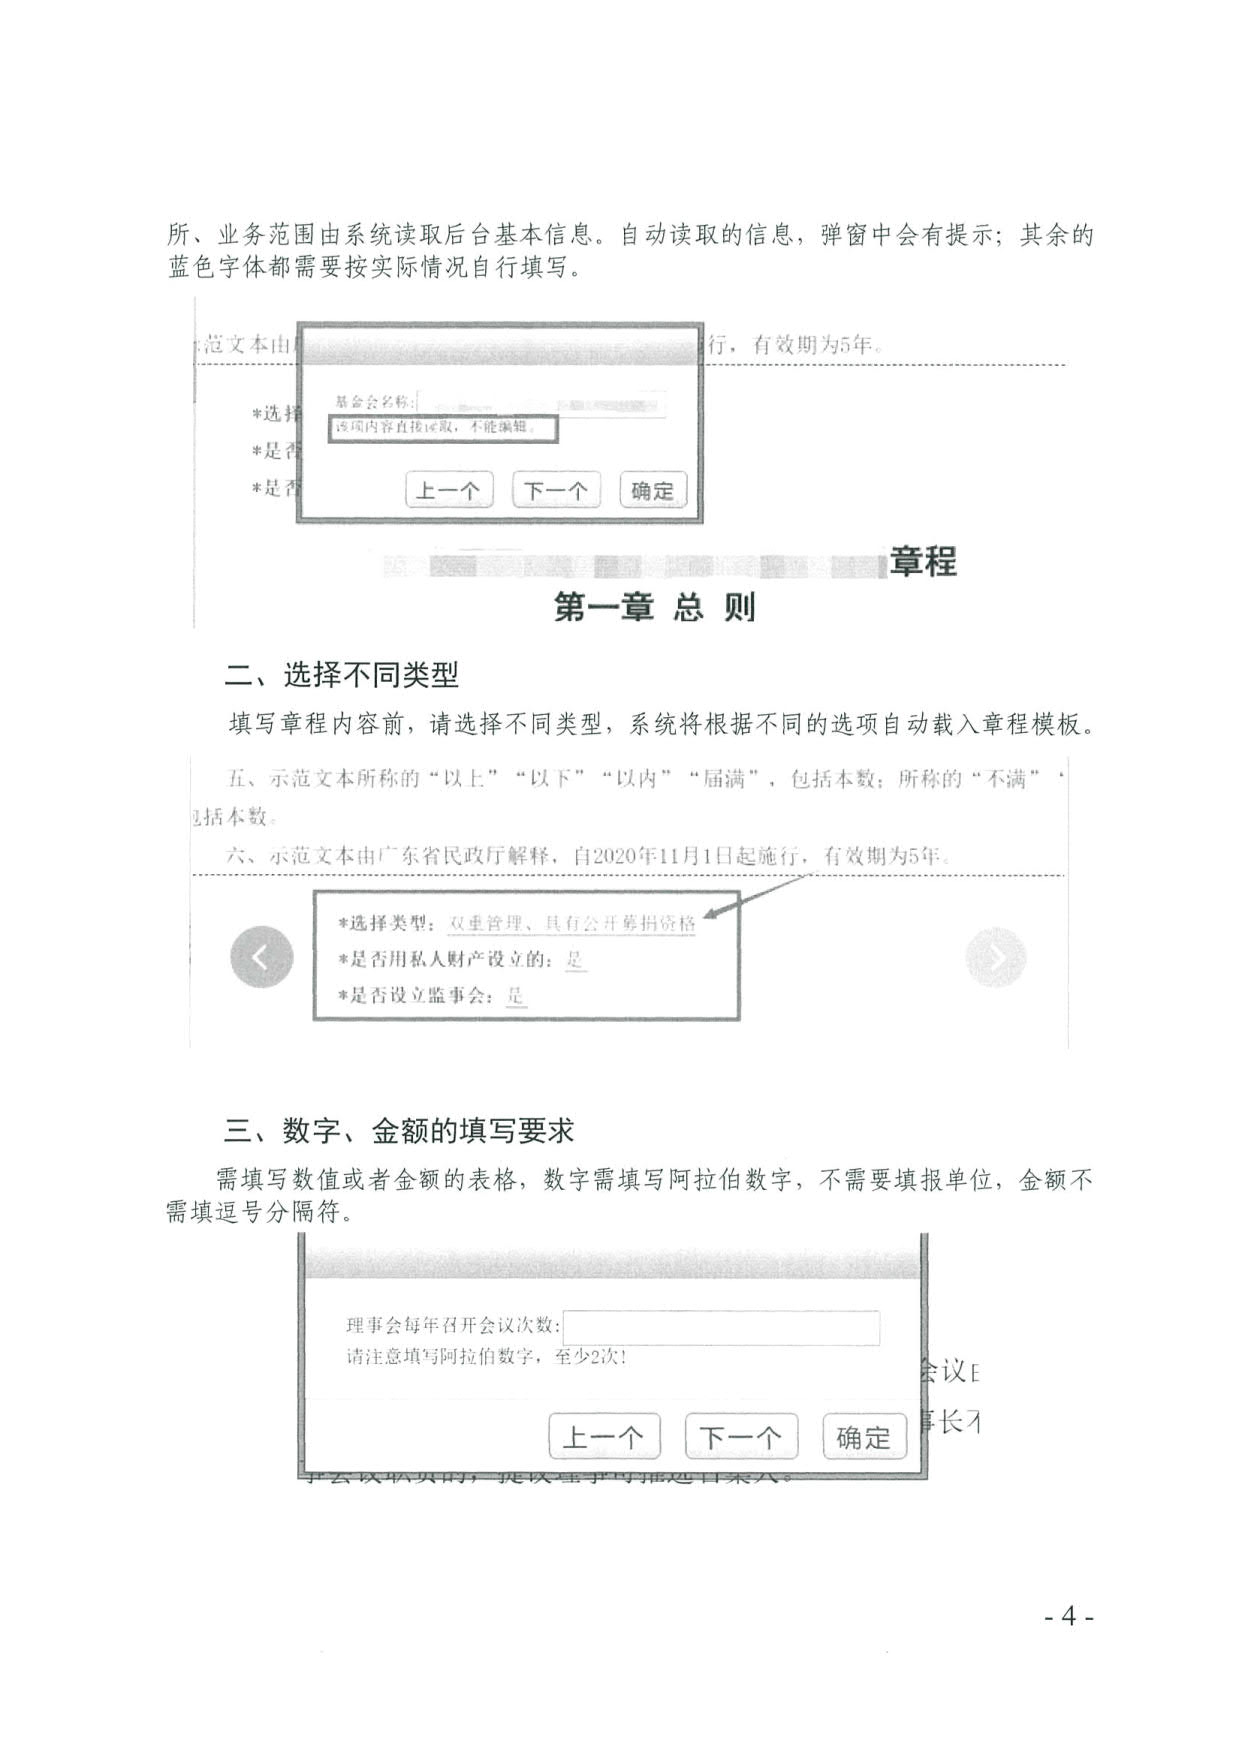 广东省社会组织管理局关于更新基金会章程核准等申报流程的通知(2)_4.jpg